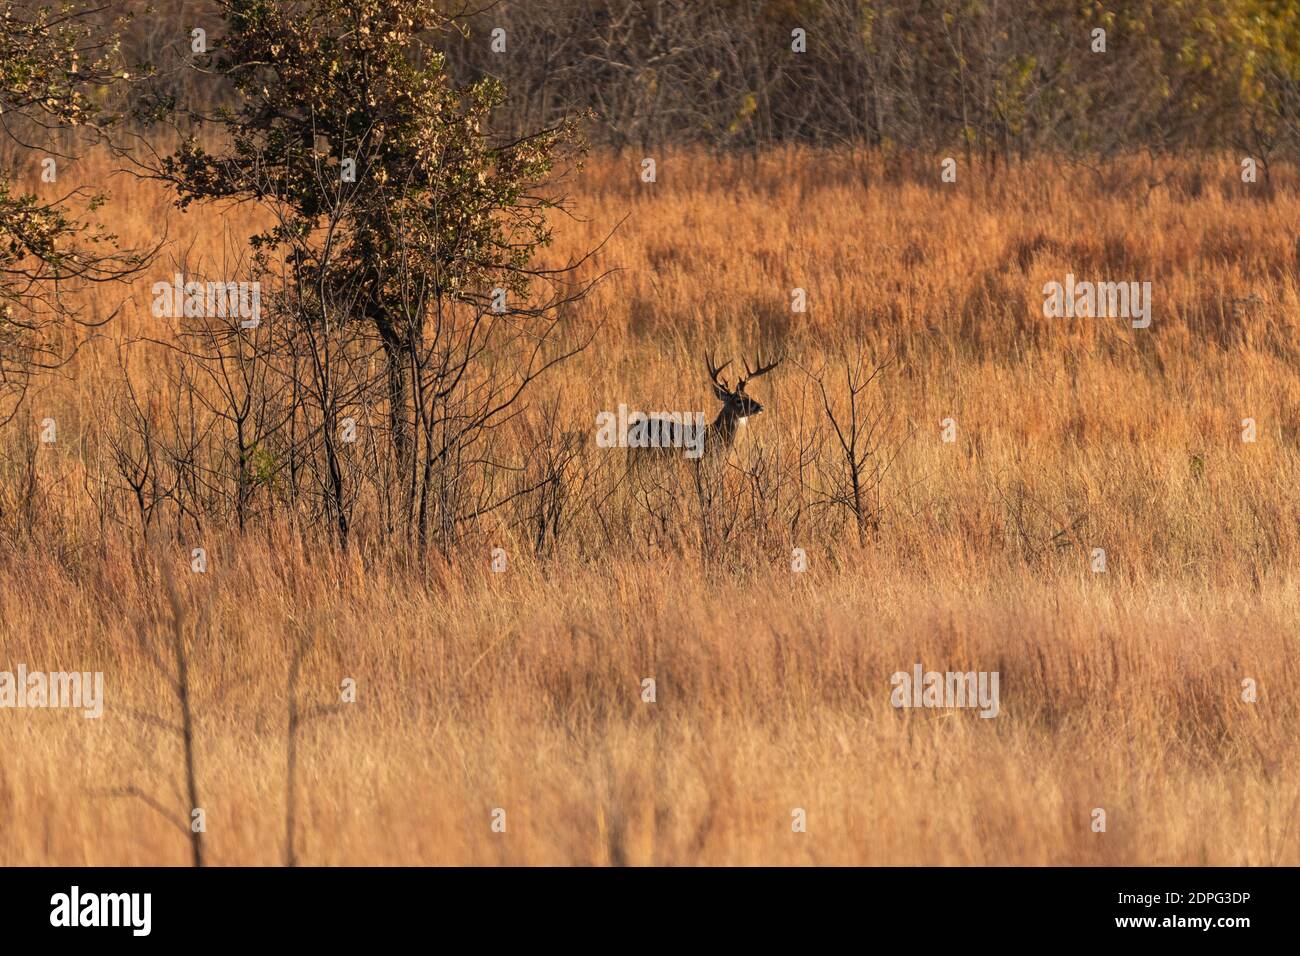 Un grand buck de cerf de Virginie debout dans une grande herbe dans un champ entouré d'arbres dans la lumière chaude du soleil du matin. Banque D'Images